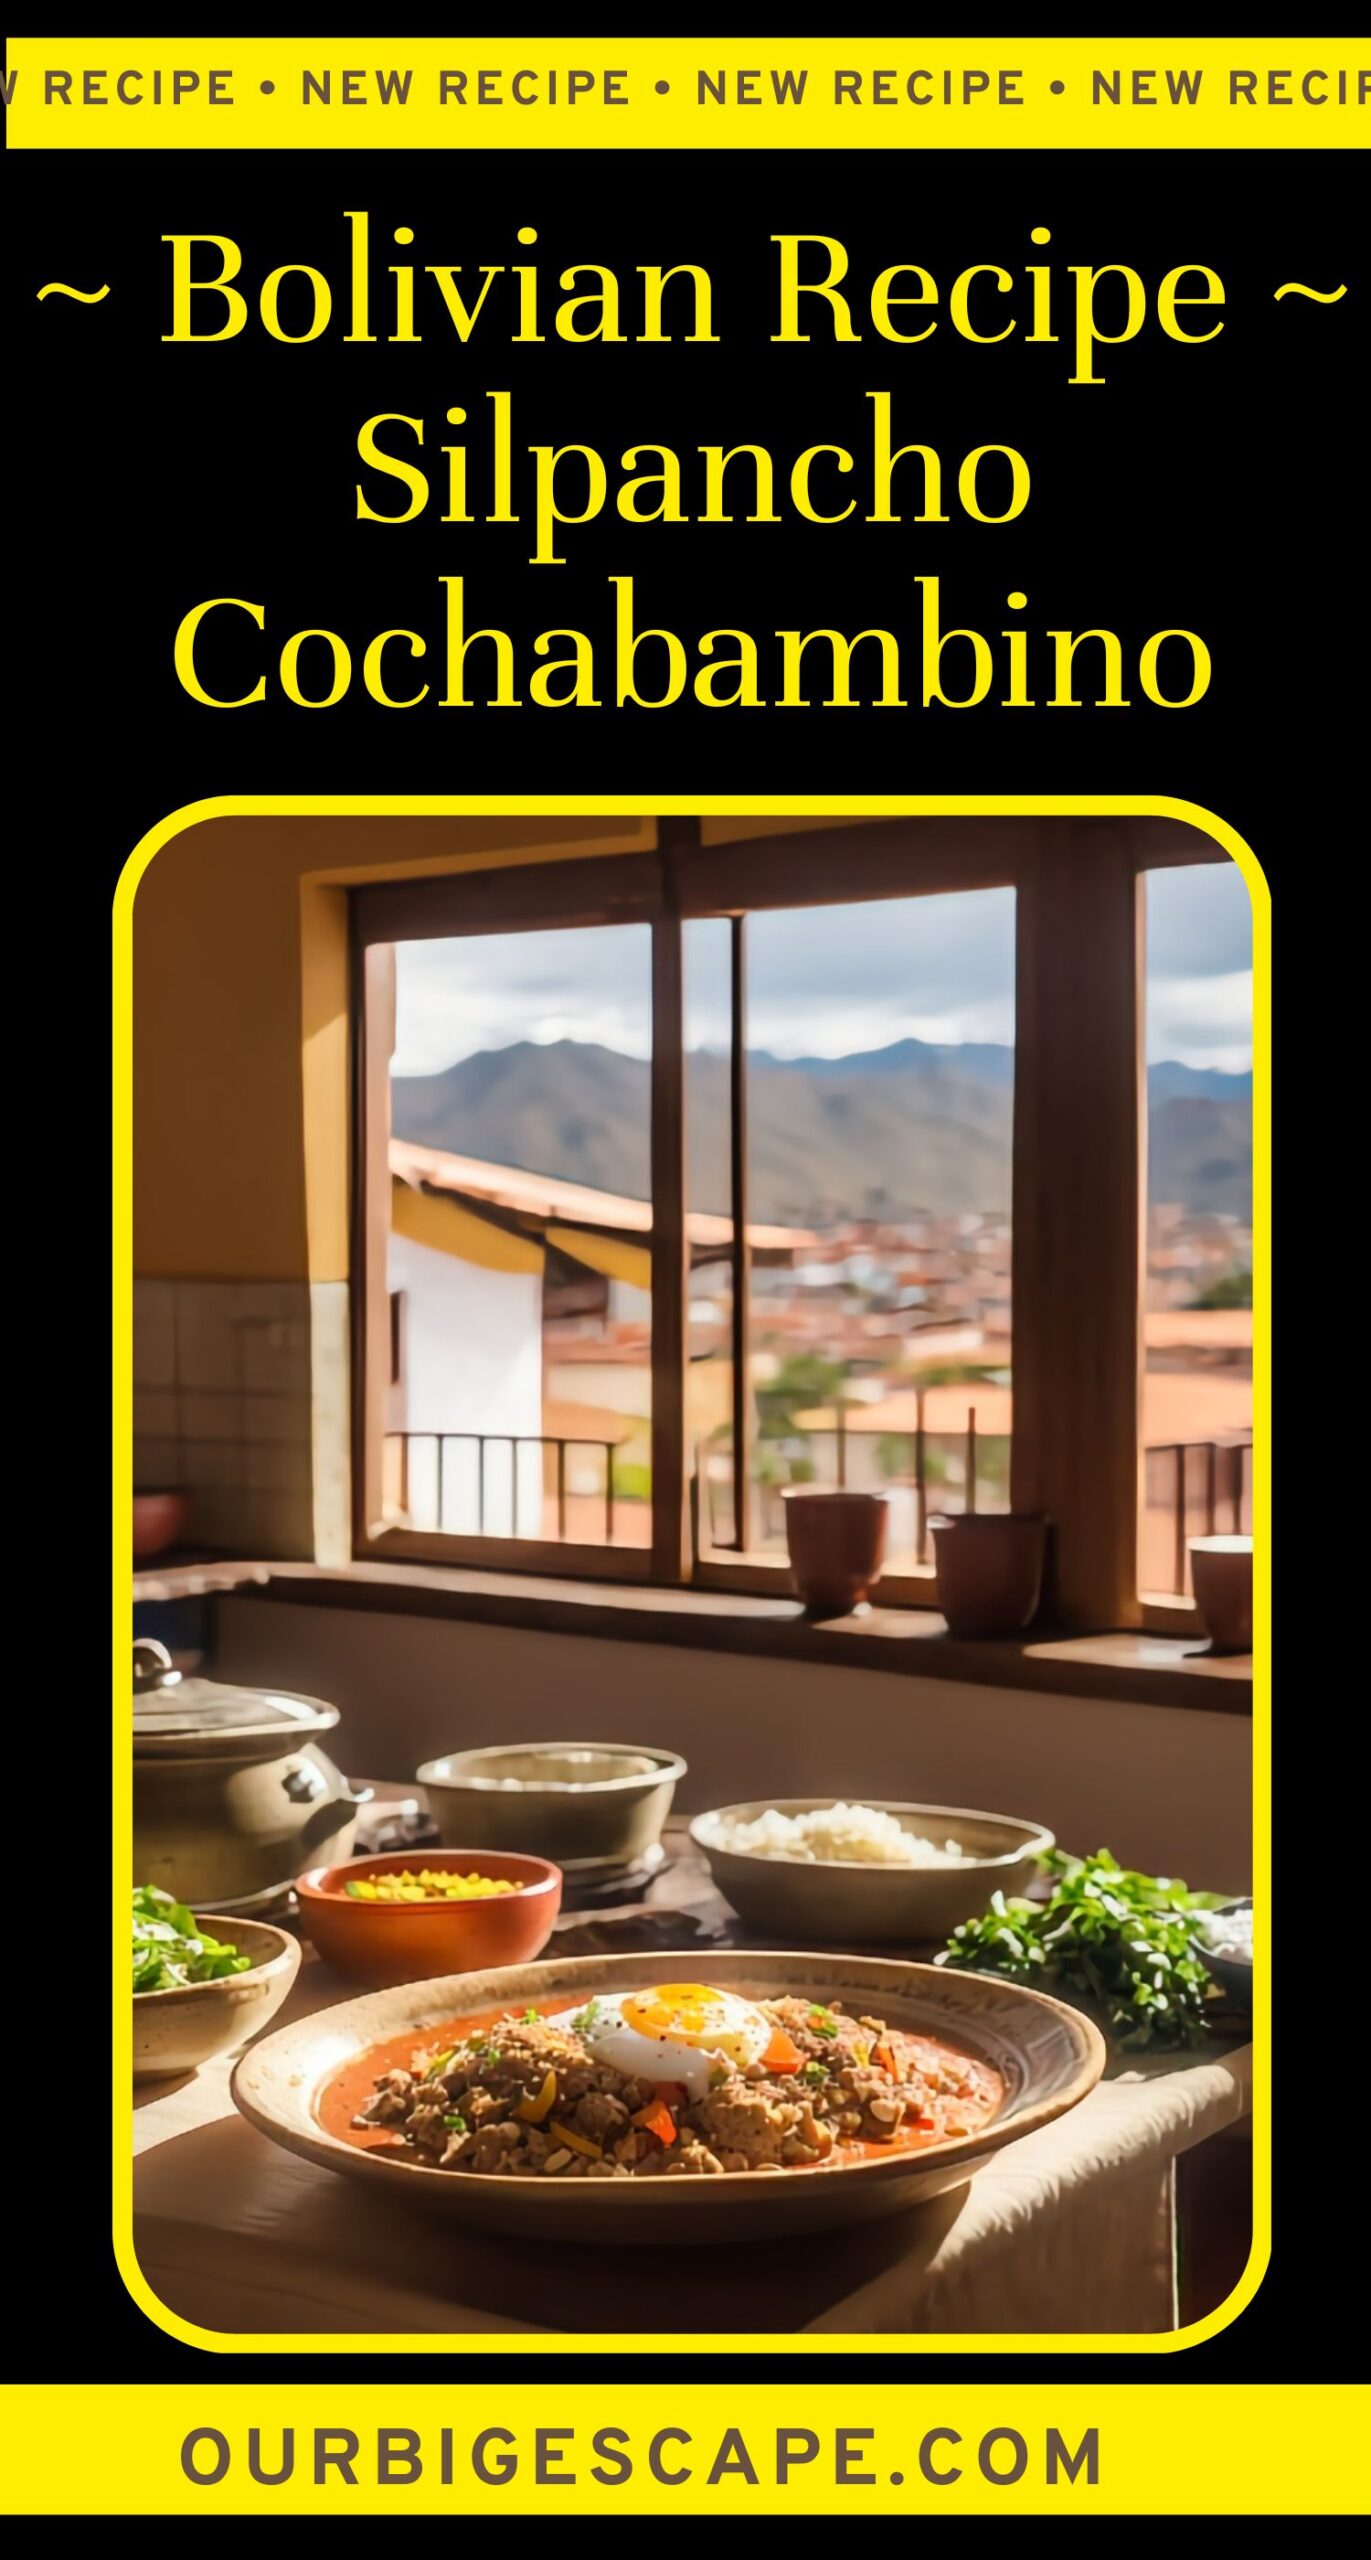 5. Bolivian Recipe Silpancho Cochabambino